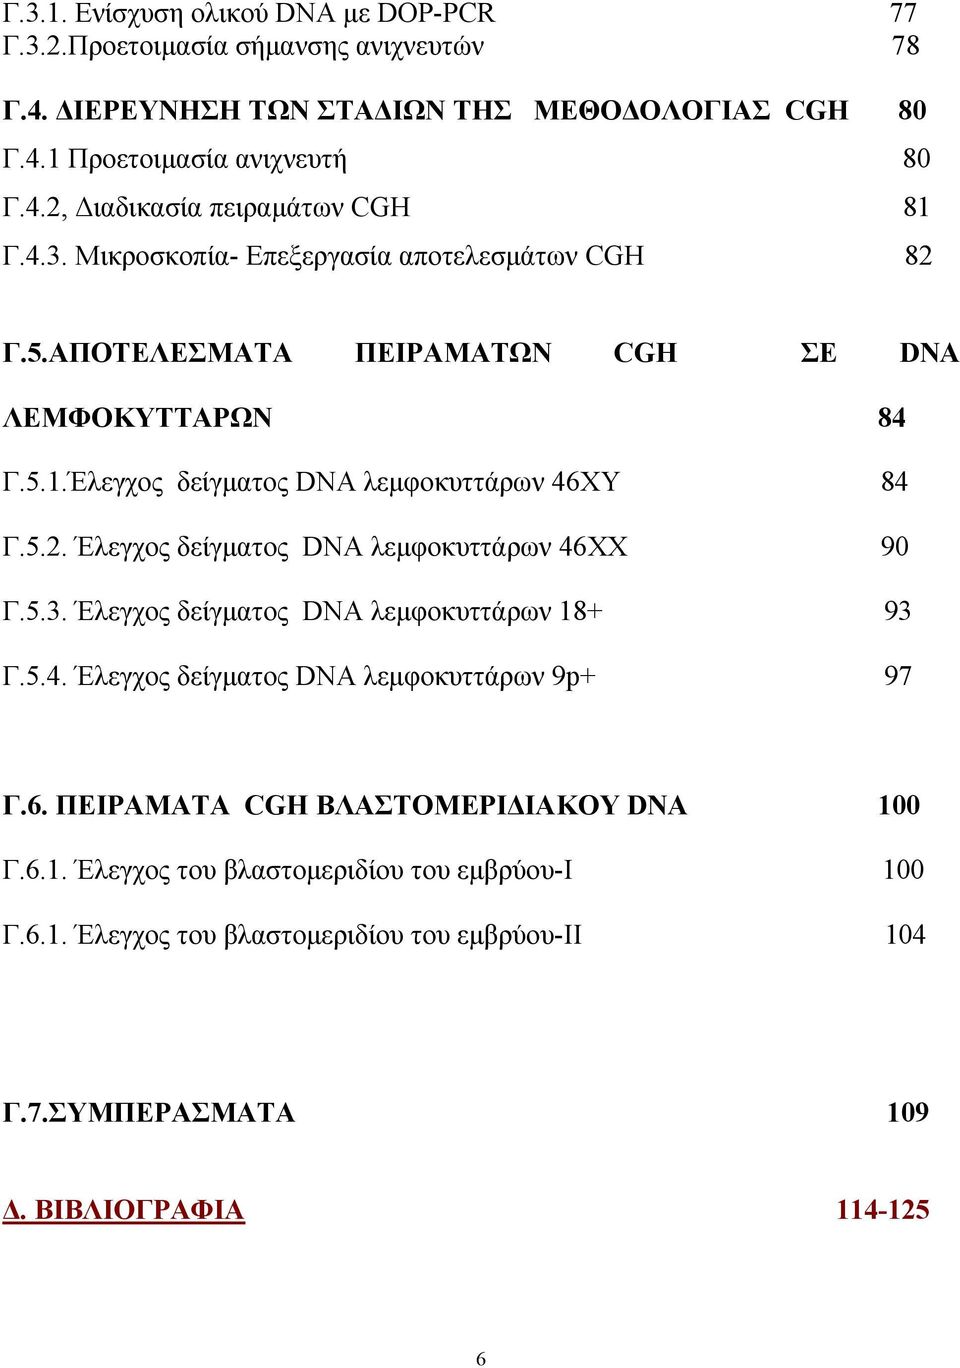 5.3. Έλεγχος δείγματος DNA λεμφοκυττάρων 18+ 93 Γ.5.4. Έλεγχος δείγματος DNA λεμφοκυττάρων 9p+ 97 Γ.6. ΠΕΙΡΑΜΑΤΑ CGH ΒΛΑΣΤΟΜΕΡΙΔΙΑΚΟΥ DNA 100 Γ.6.1. Έλεγχος του βλαστομεριδίου του εμβρύου-ι 100 Γ.